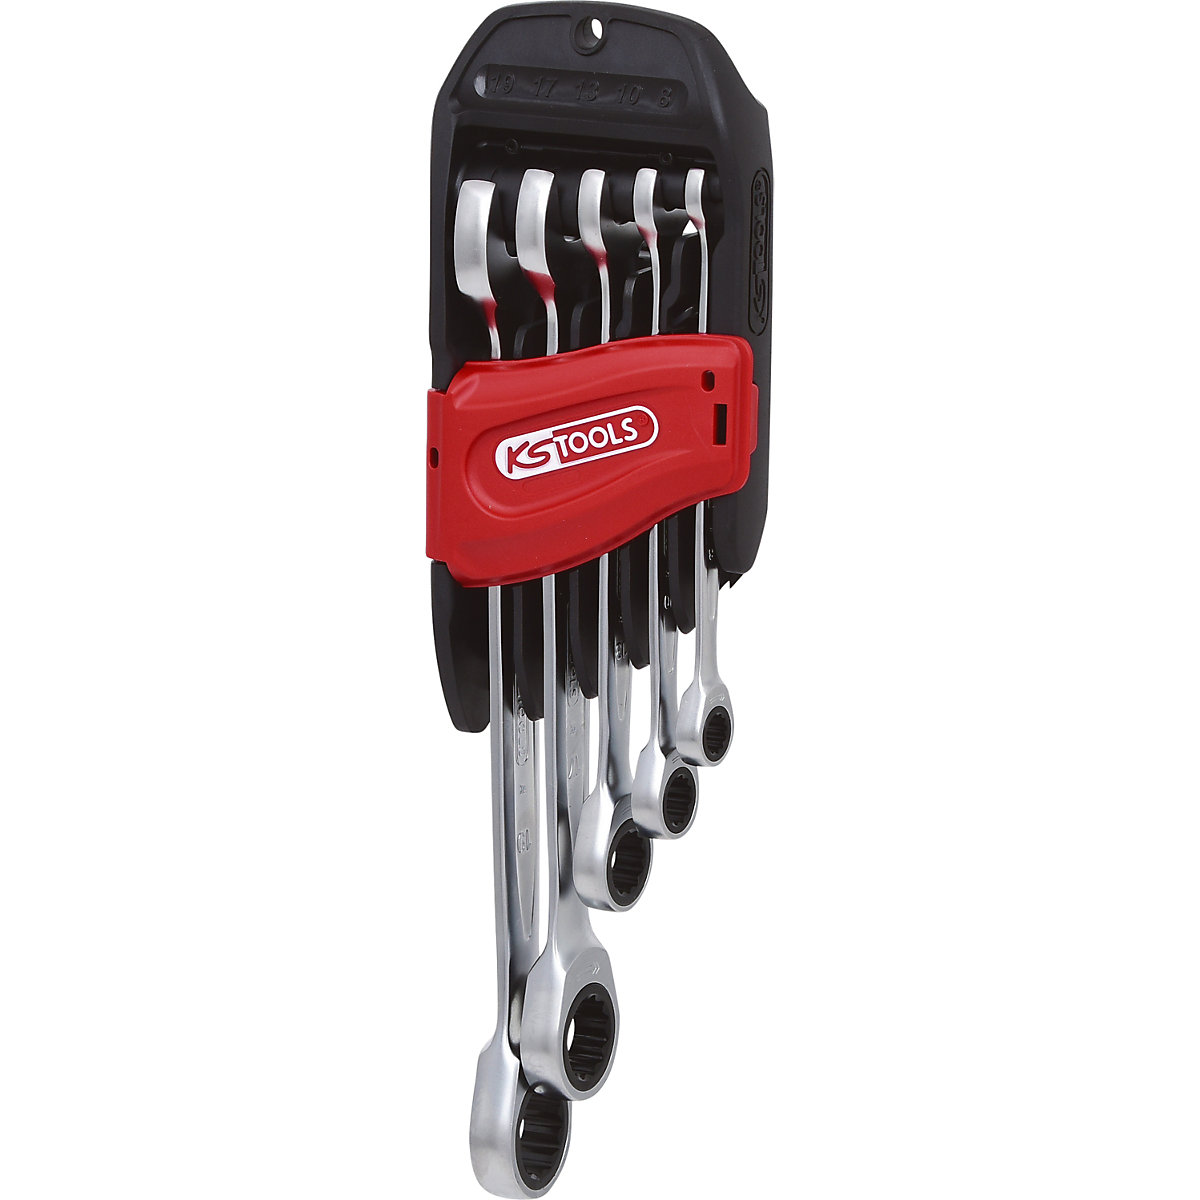 Komplet viličasto-obročastih ključev z ragljo GEARplus – KS Tools